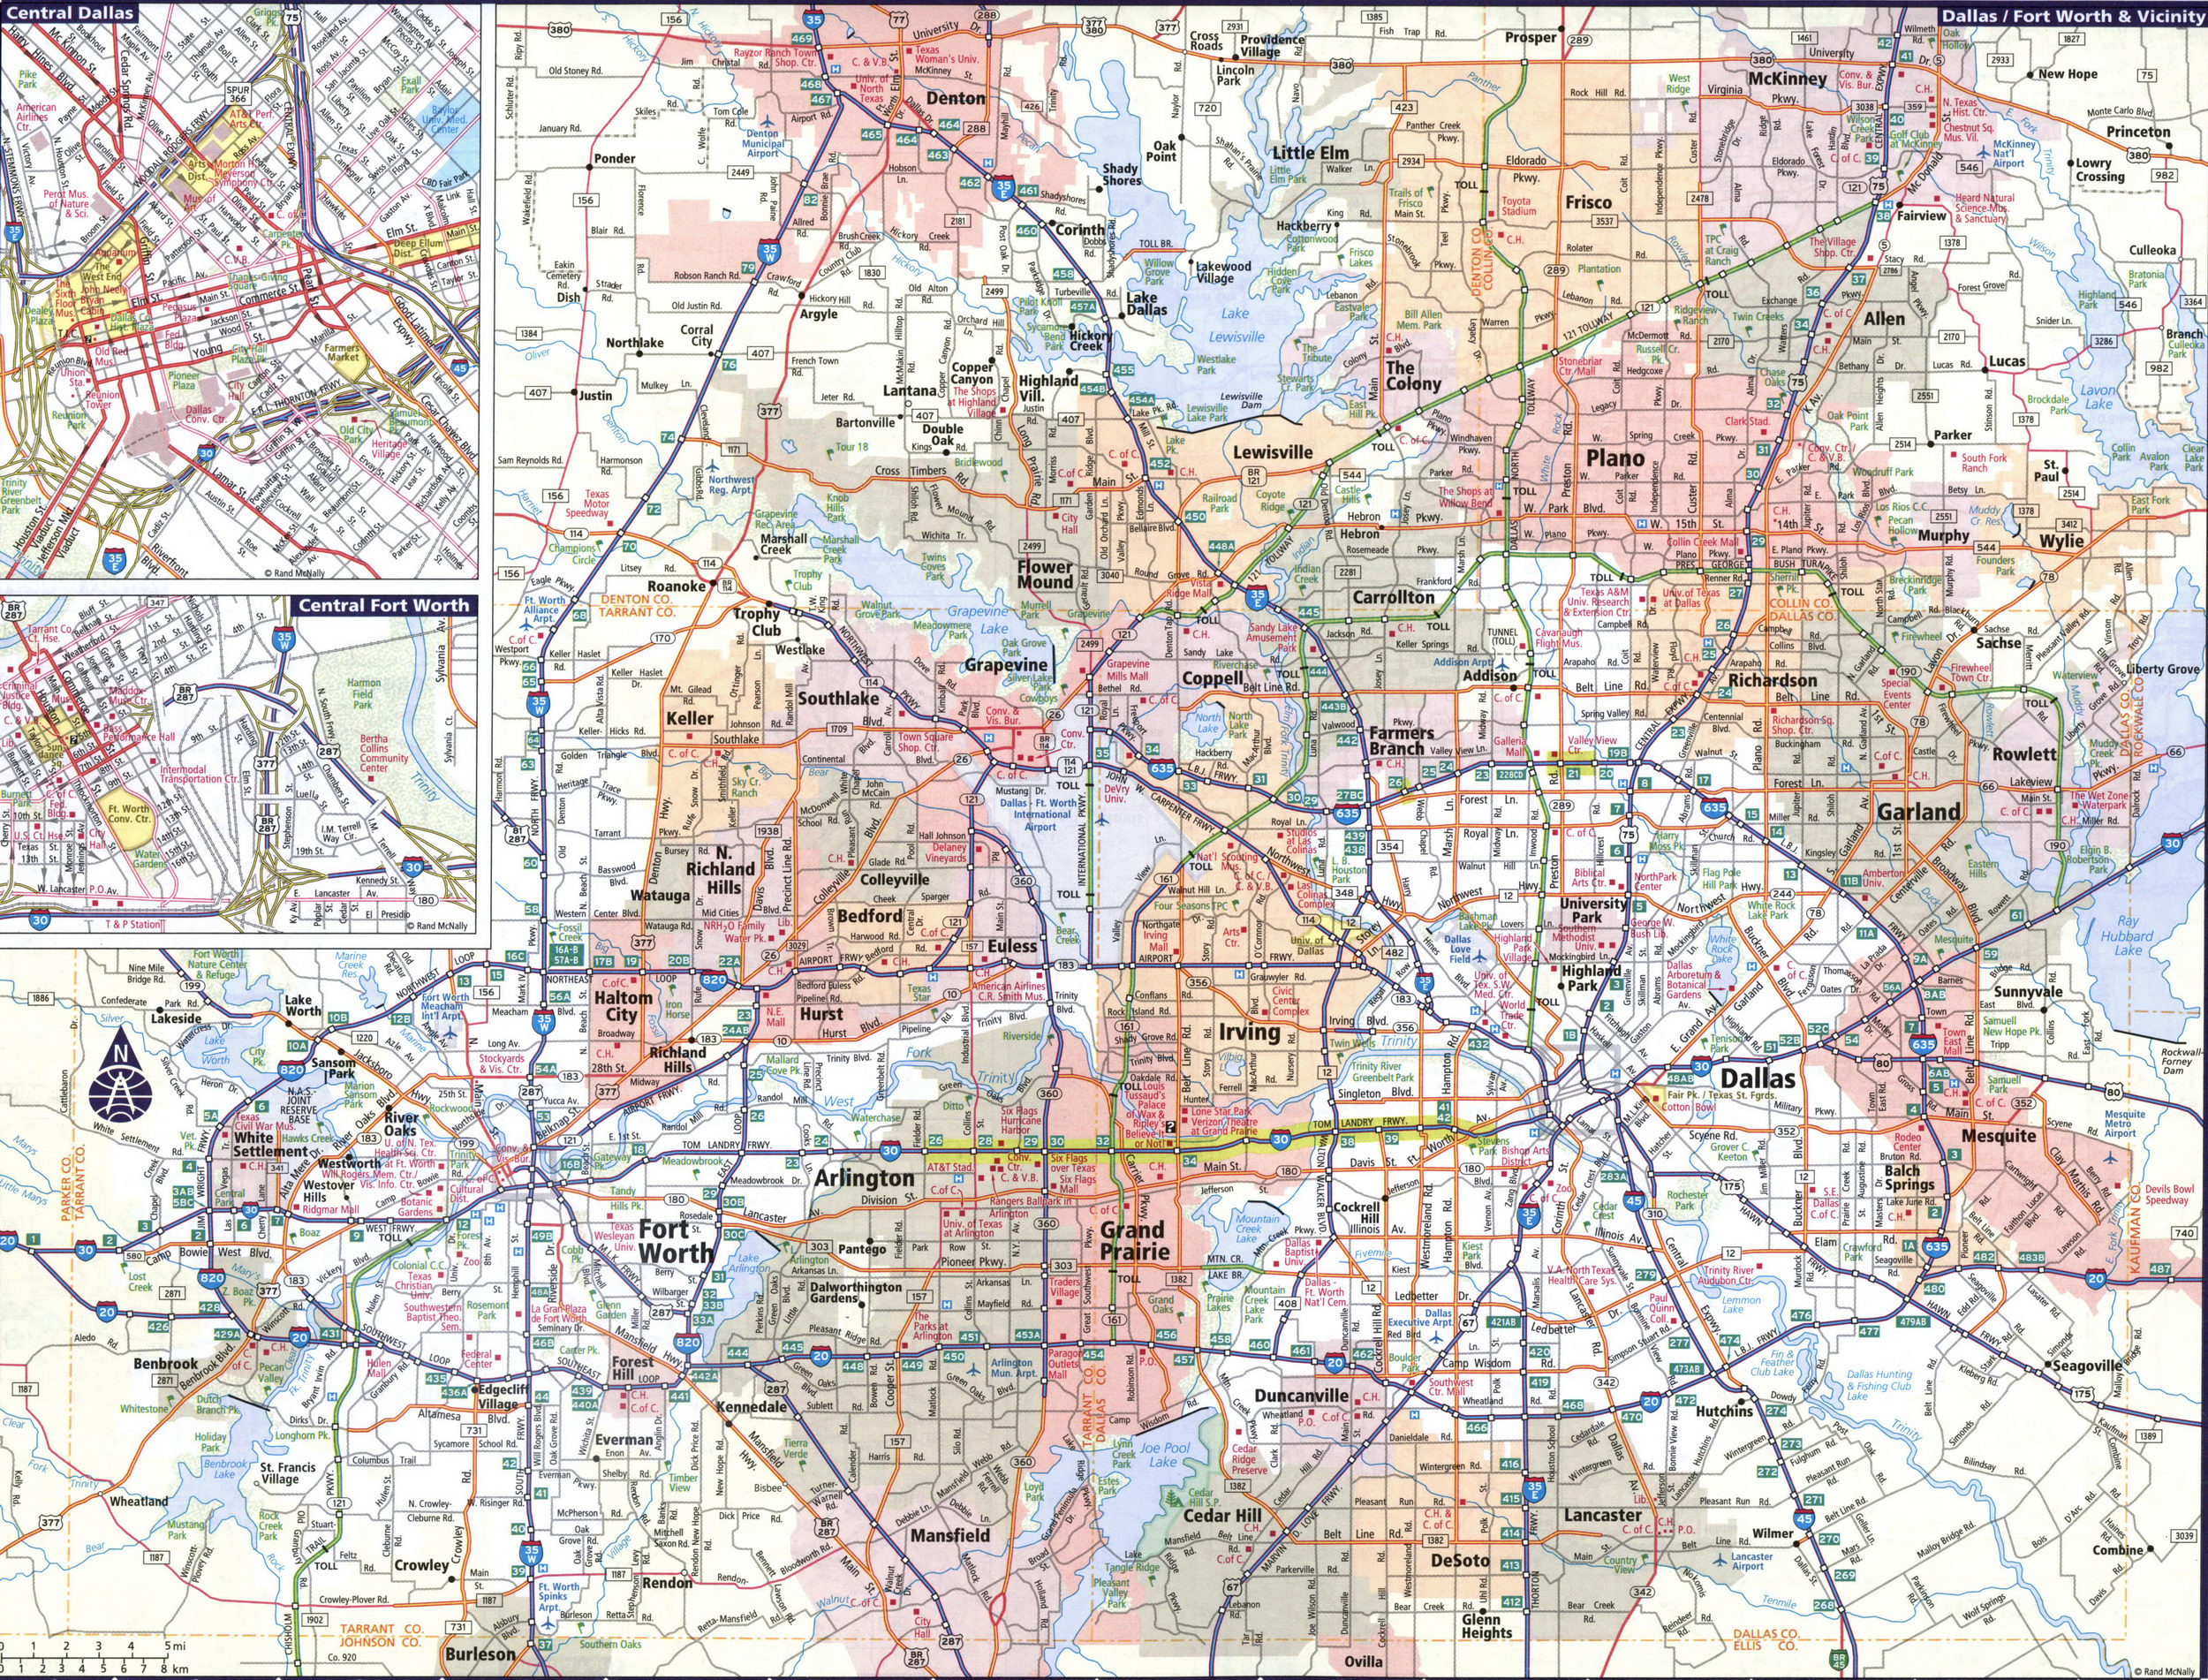 Map of Dallas area